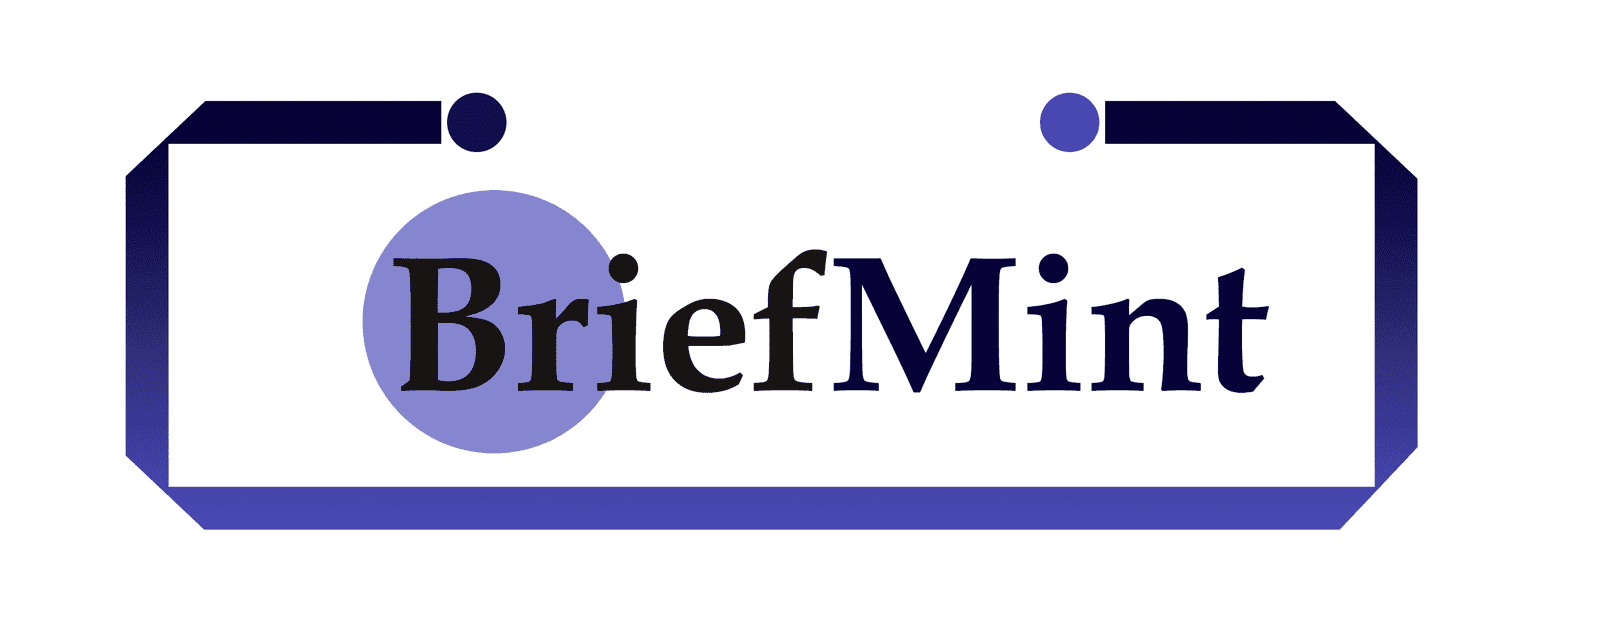 BriefMint-logo